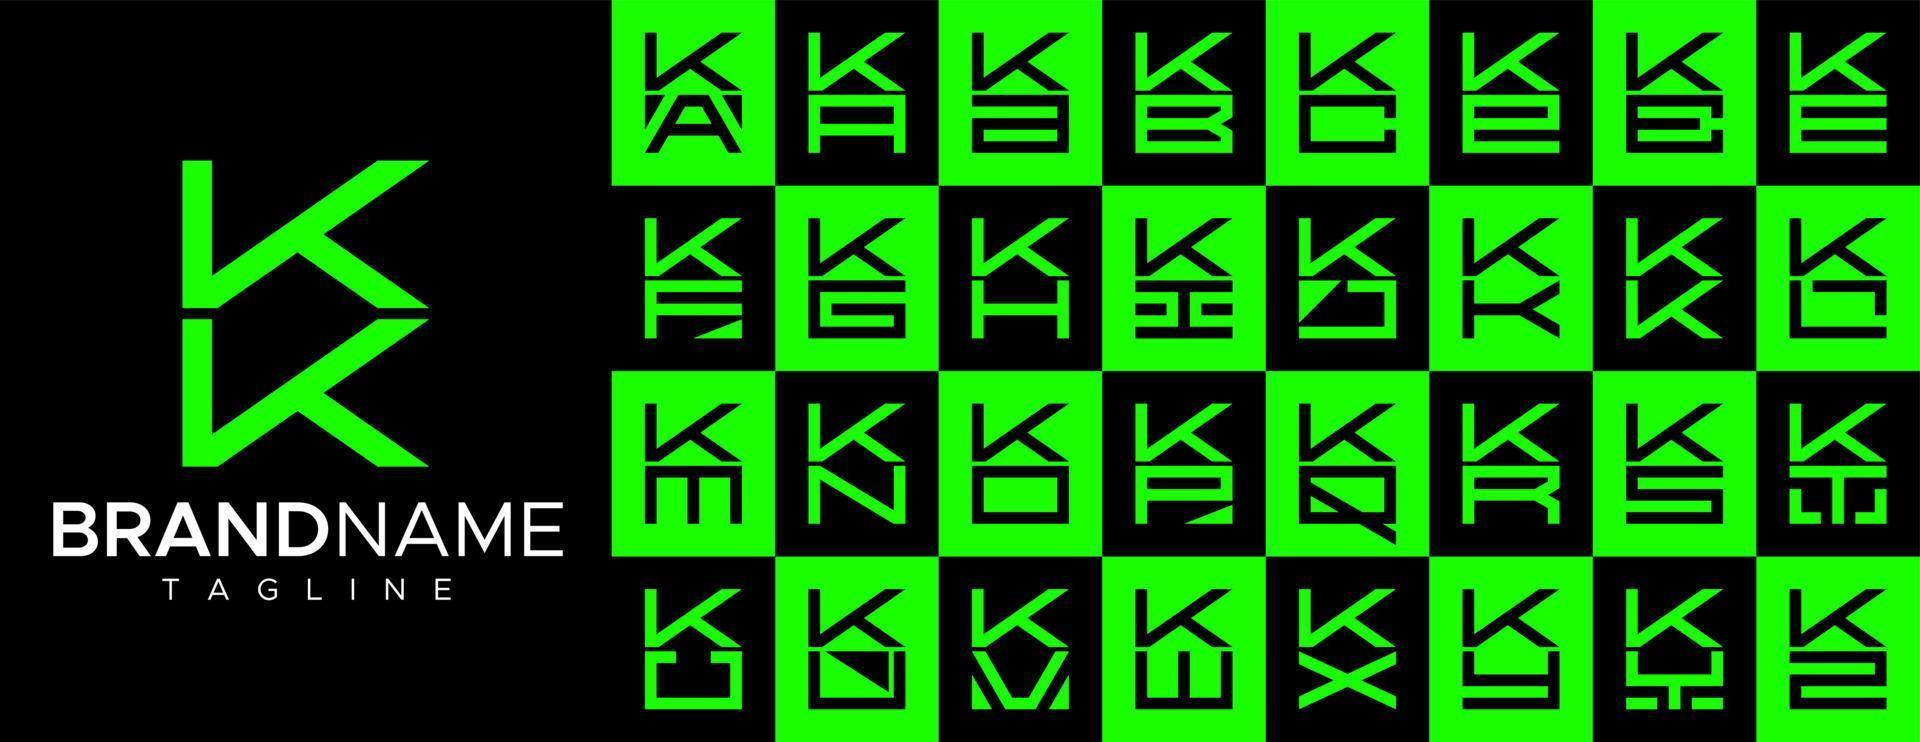 semplice piazza lettera K kk logo design impostare. moderno scatola iniziale K logo marchio. vettore